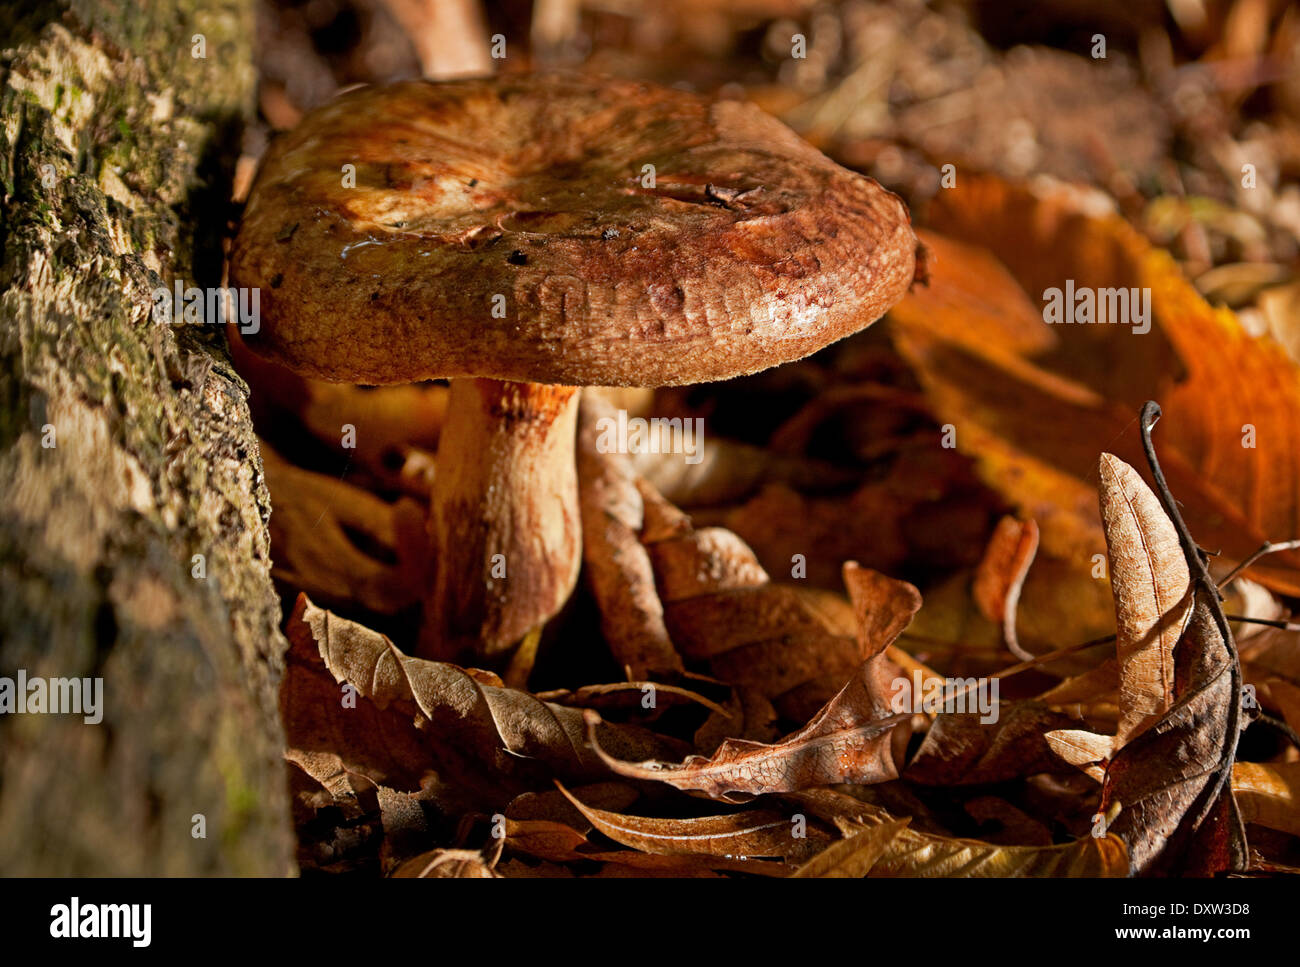 Armillaria mushroom closeup in autumn forest Stock Photo